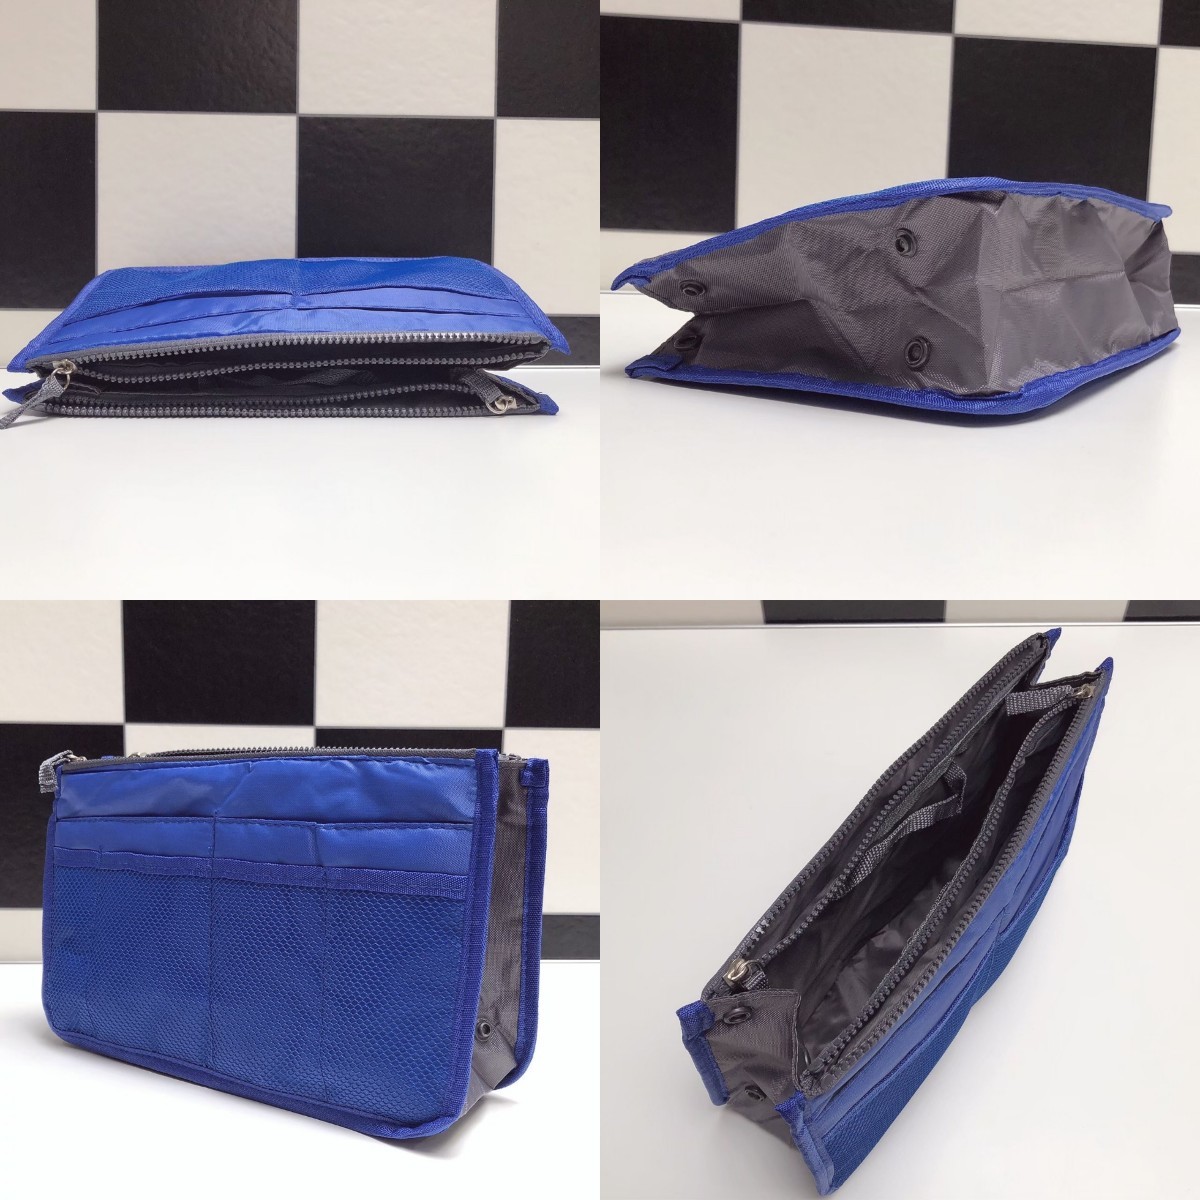 バッグインバッグ 収納 整理整頓  ポケット  携帯収納  ボタン付き 化粧品 インナーバッグ  化粧ポーチ 小物収納 ブルー 青